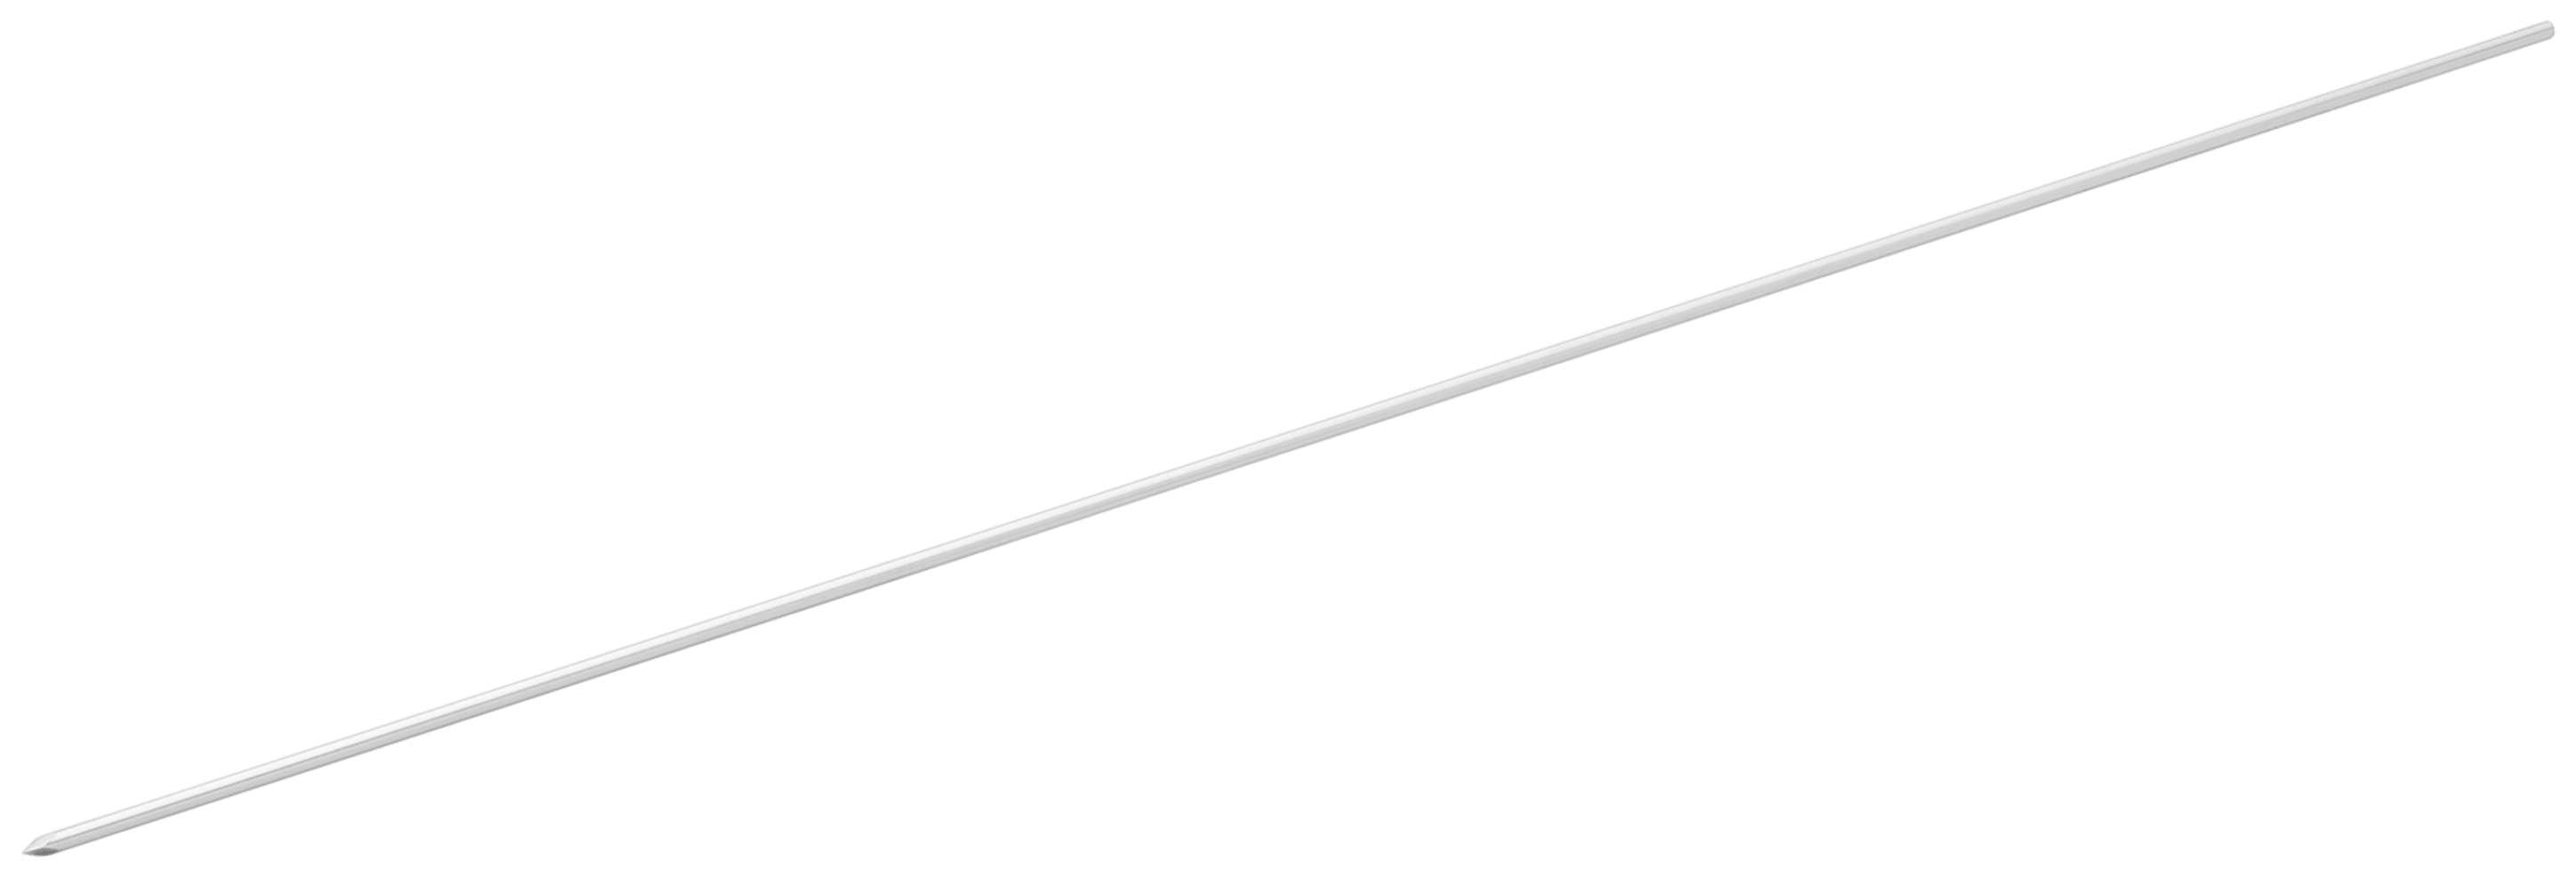 Führungsdraht mit Trokarspitze, 1.6 mm x 235 mm